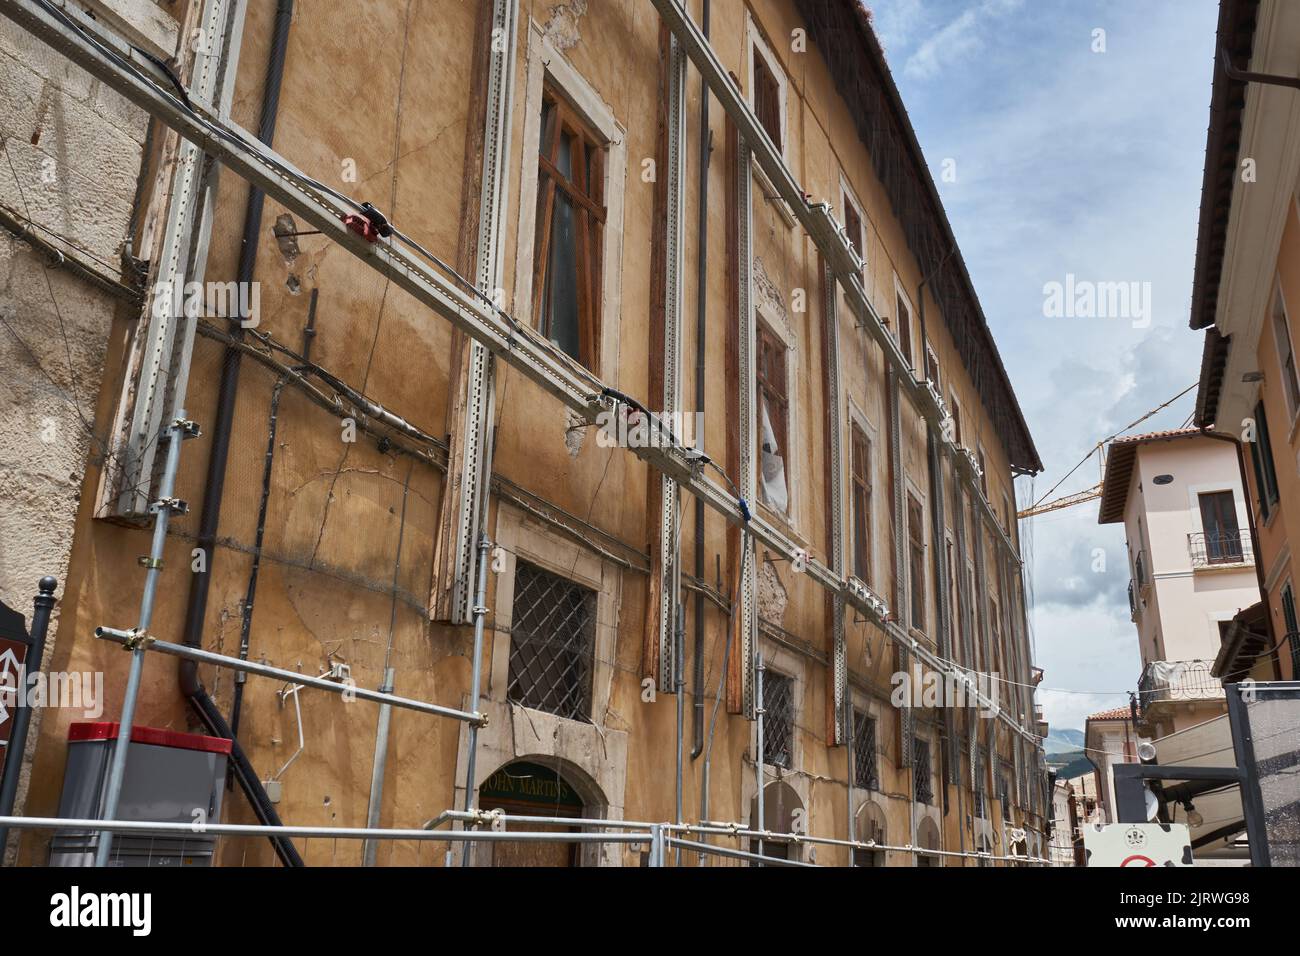 Historische Fassade, Sicherung durch ein Metallgerüst nach dem Erbeben von 2009, l’Aquila, Abruzzen, Italien, Europa Banque D'Images